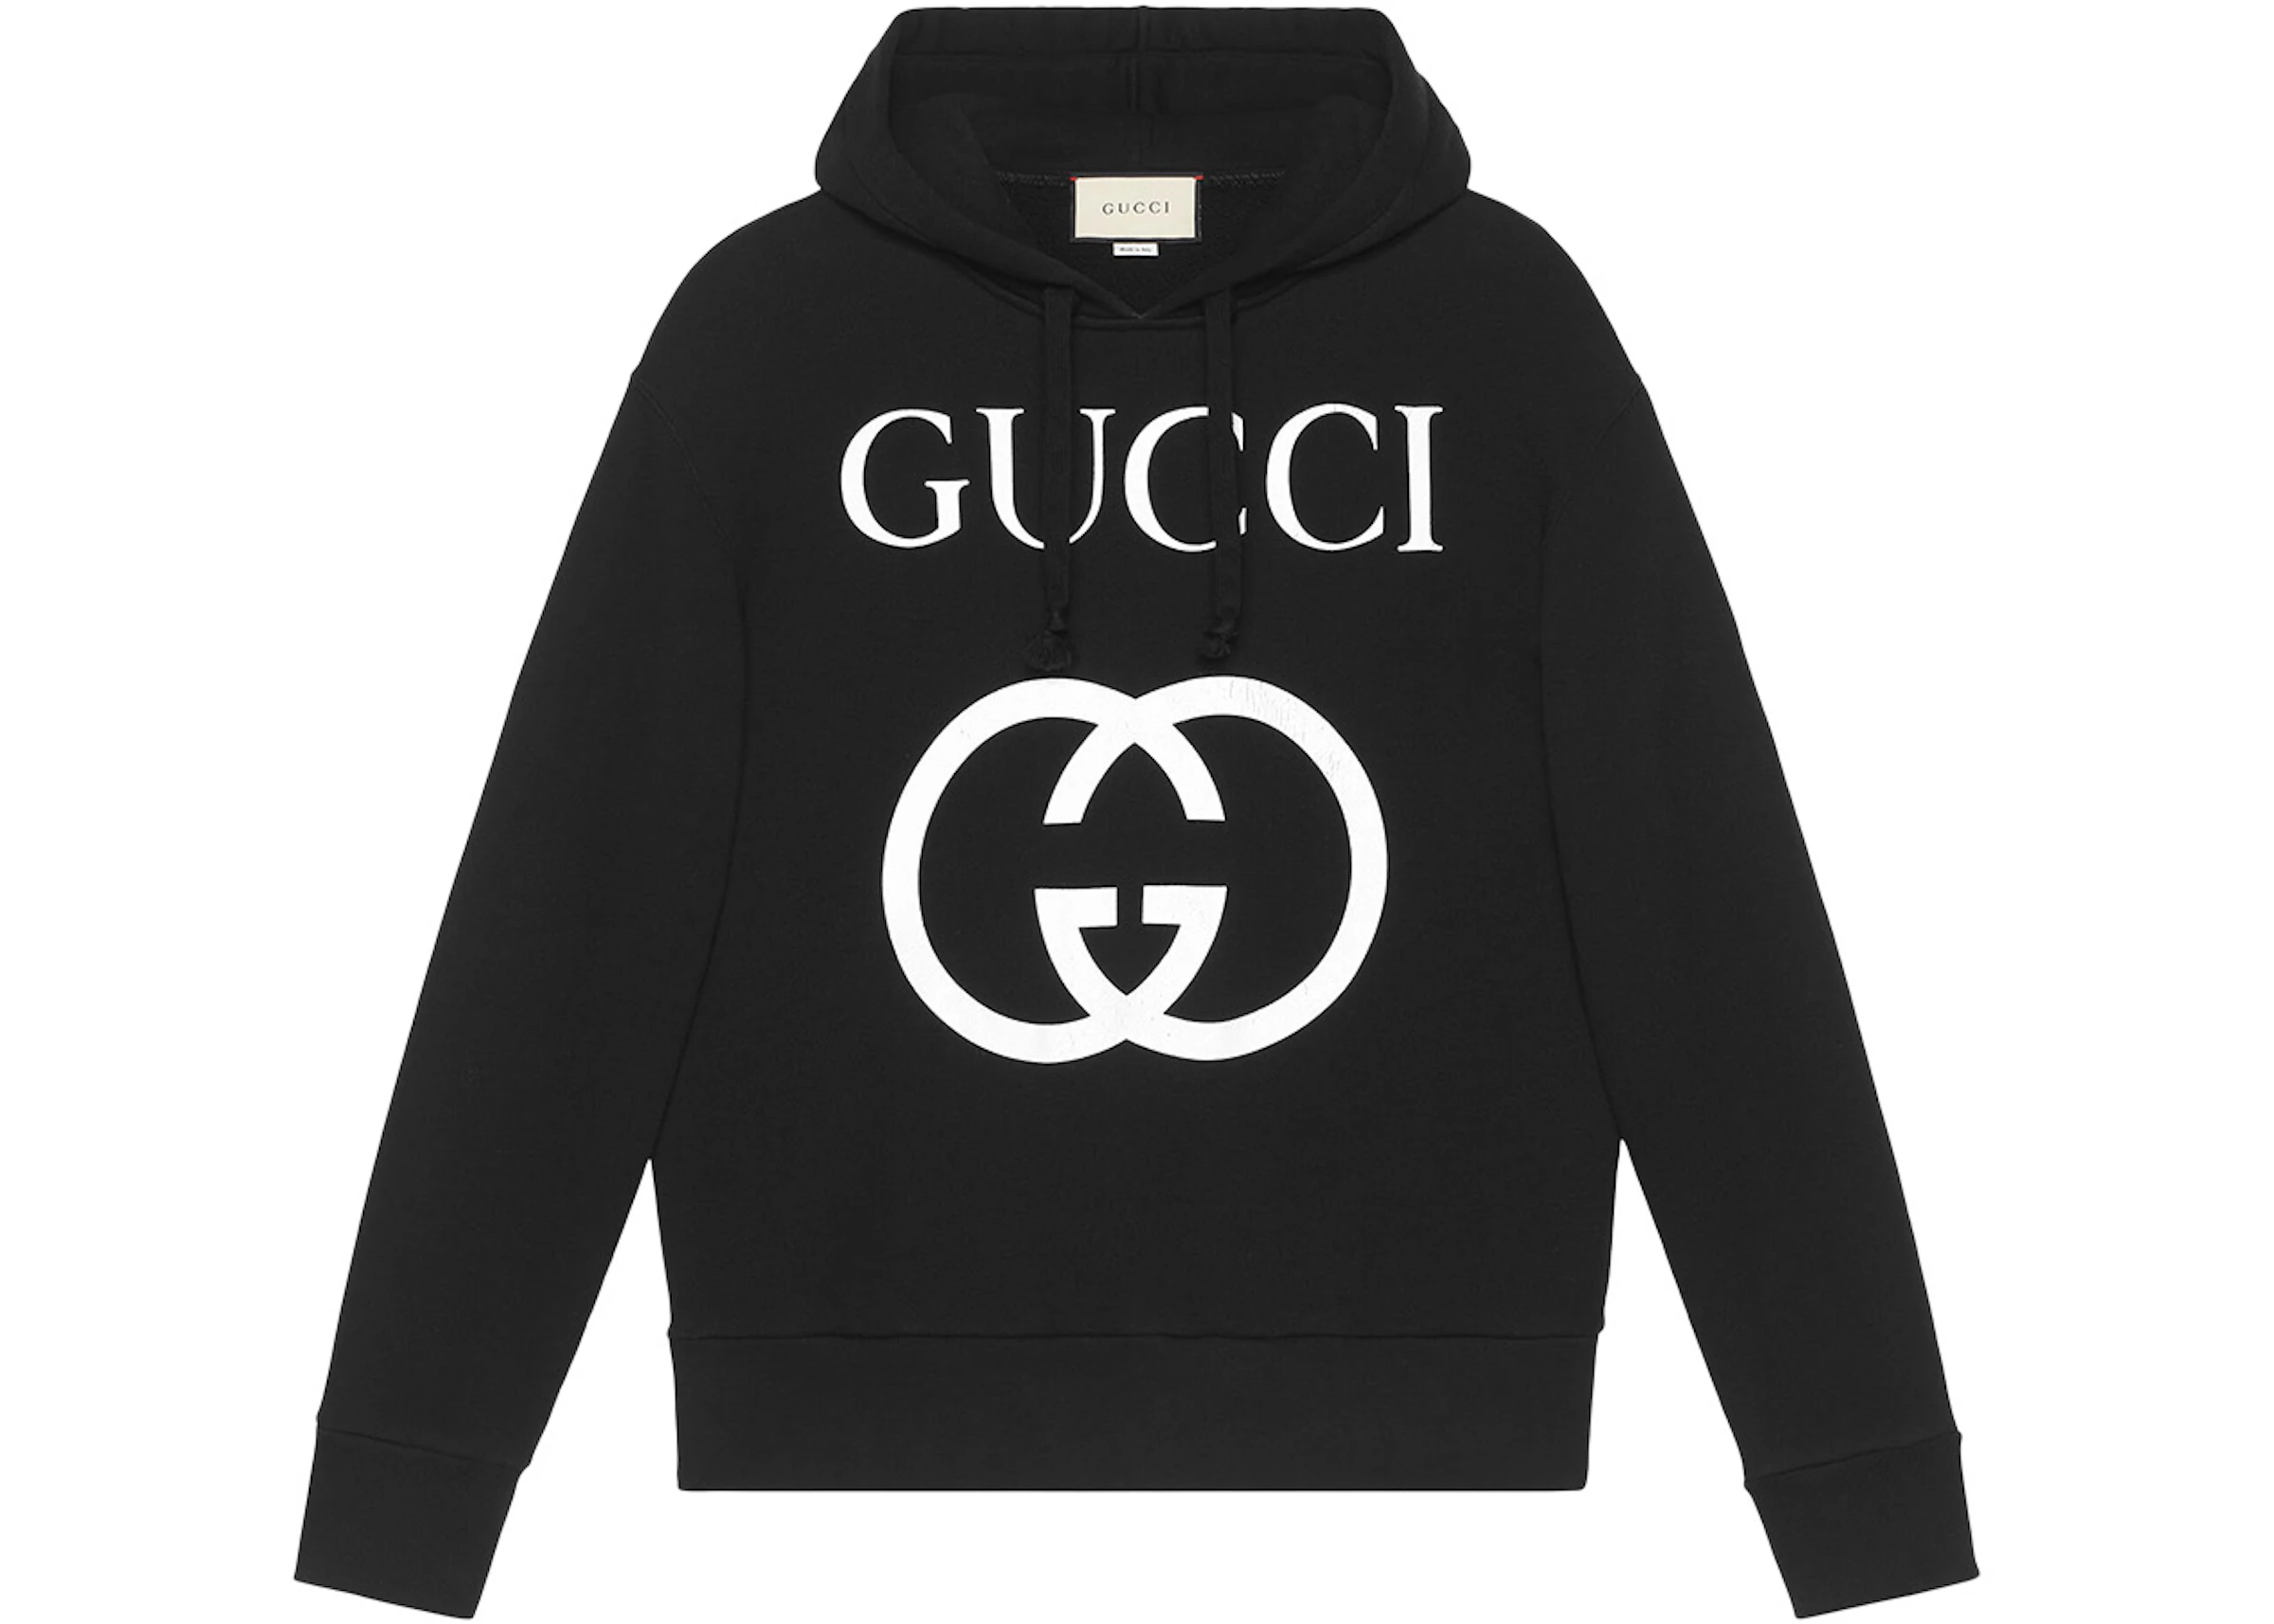 kleding stof Koopje Geweldige eik Gucci Interlocking G Oversize Fit Hoodie Black/White - FW22 - US